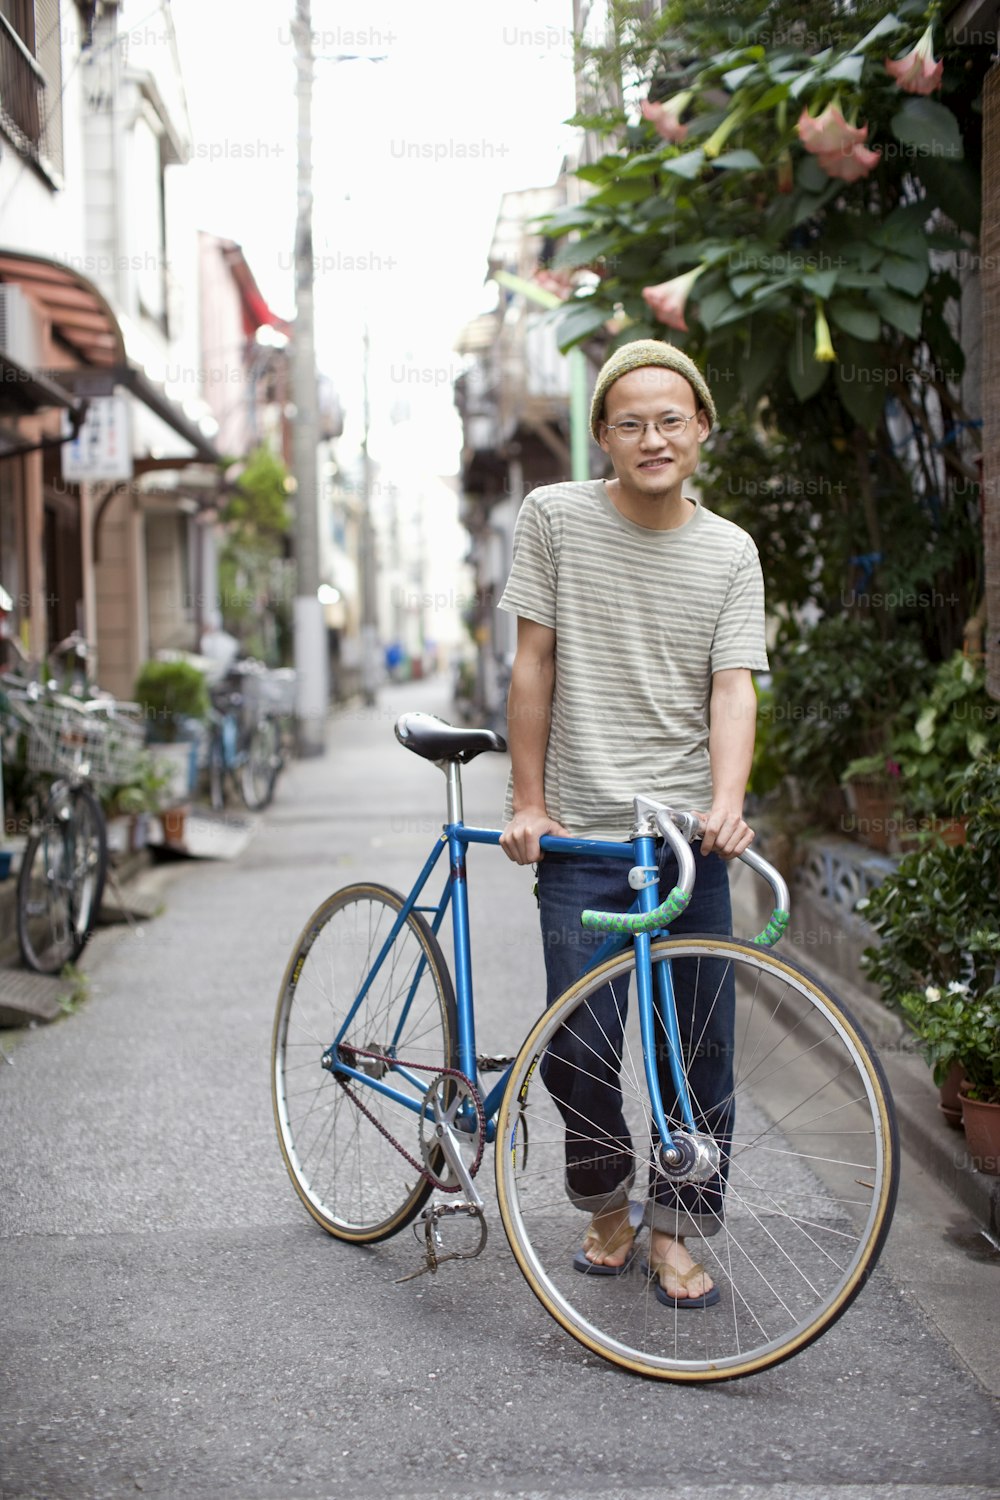 Un hombre parado junto a una bicicleta azul